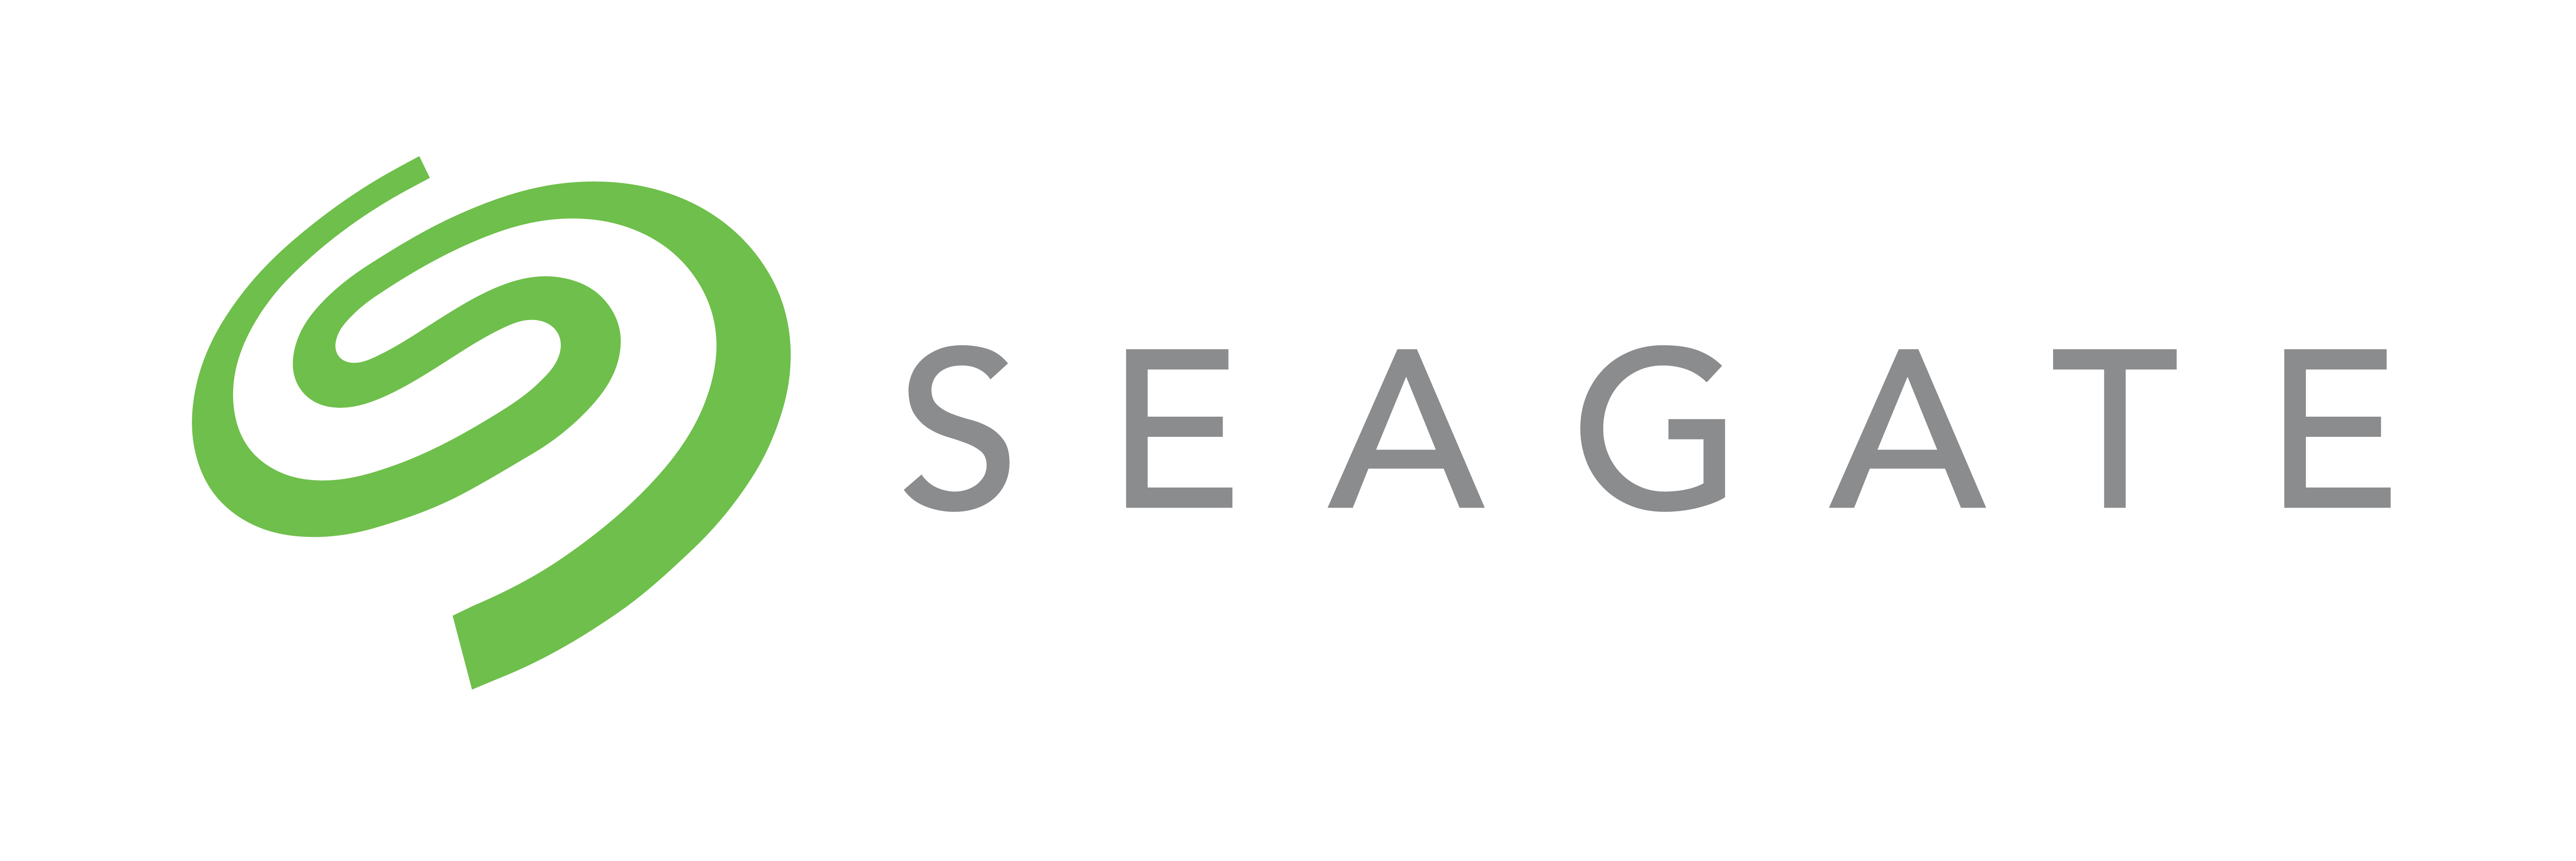 seagate green horizontal